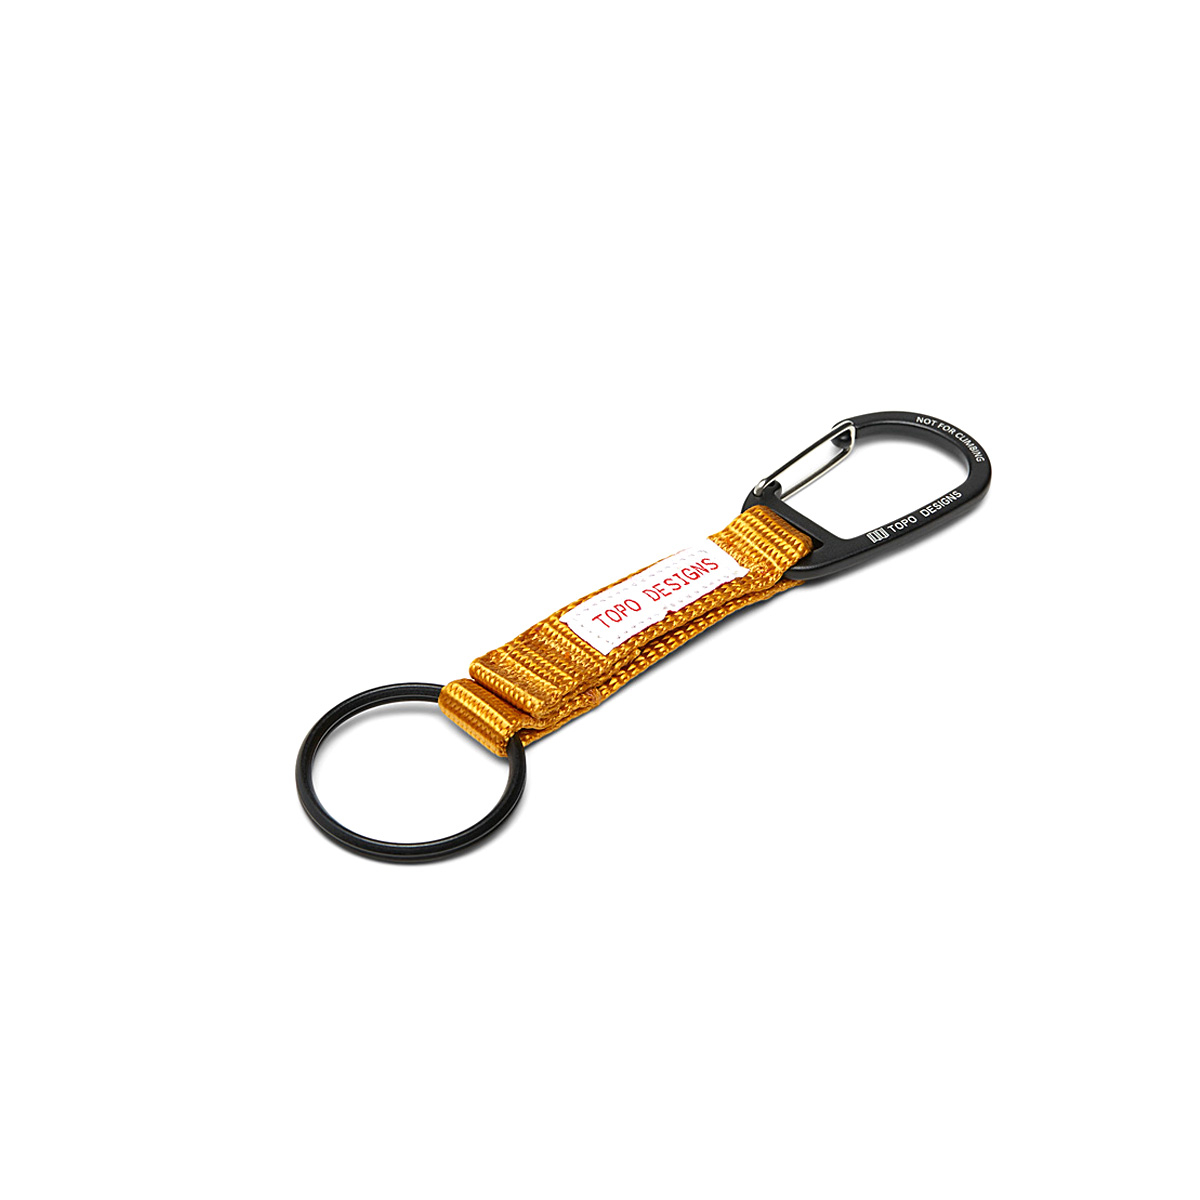 Topo Designs Key Clip Mustard, halten Sie Ihre Schlüssel griffbereit und sichtbar mit diesem Schlüsselclip